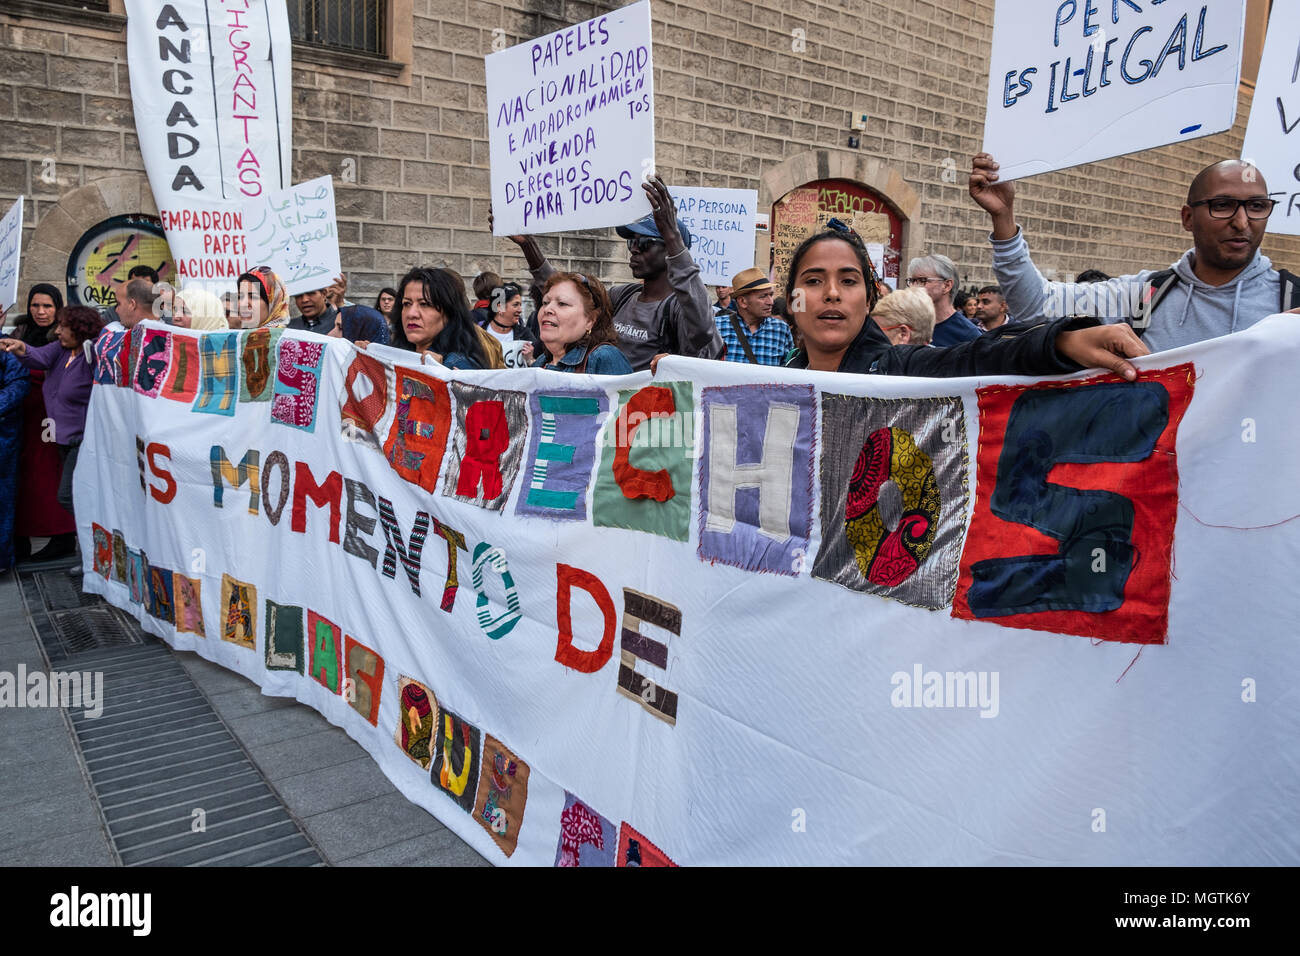 Barcelona, España. 28 abr, 2018. Una gran pancarta a mano con trozos de ropa visto con el texto "Exigimos derechos, es tiempo para cuidar a quienes cuidan'. Durante los últimos siete